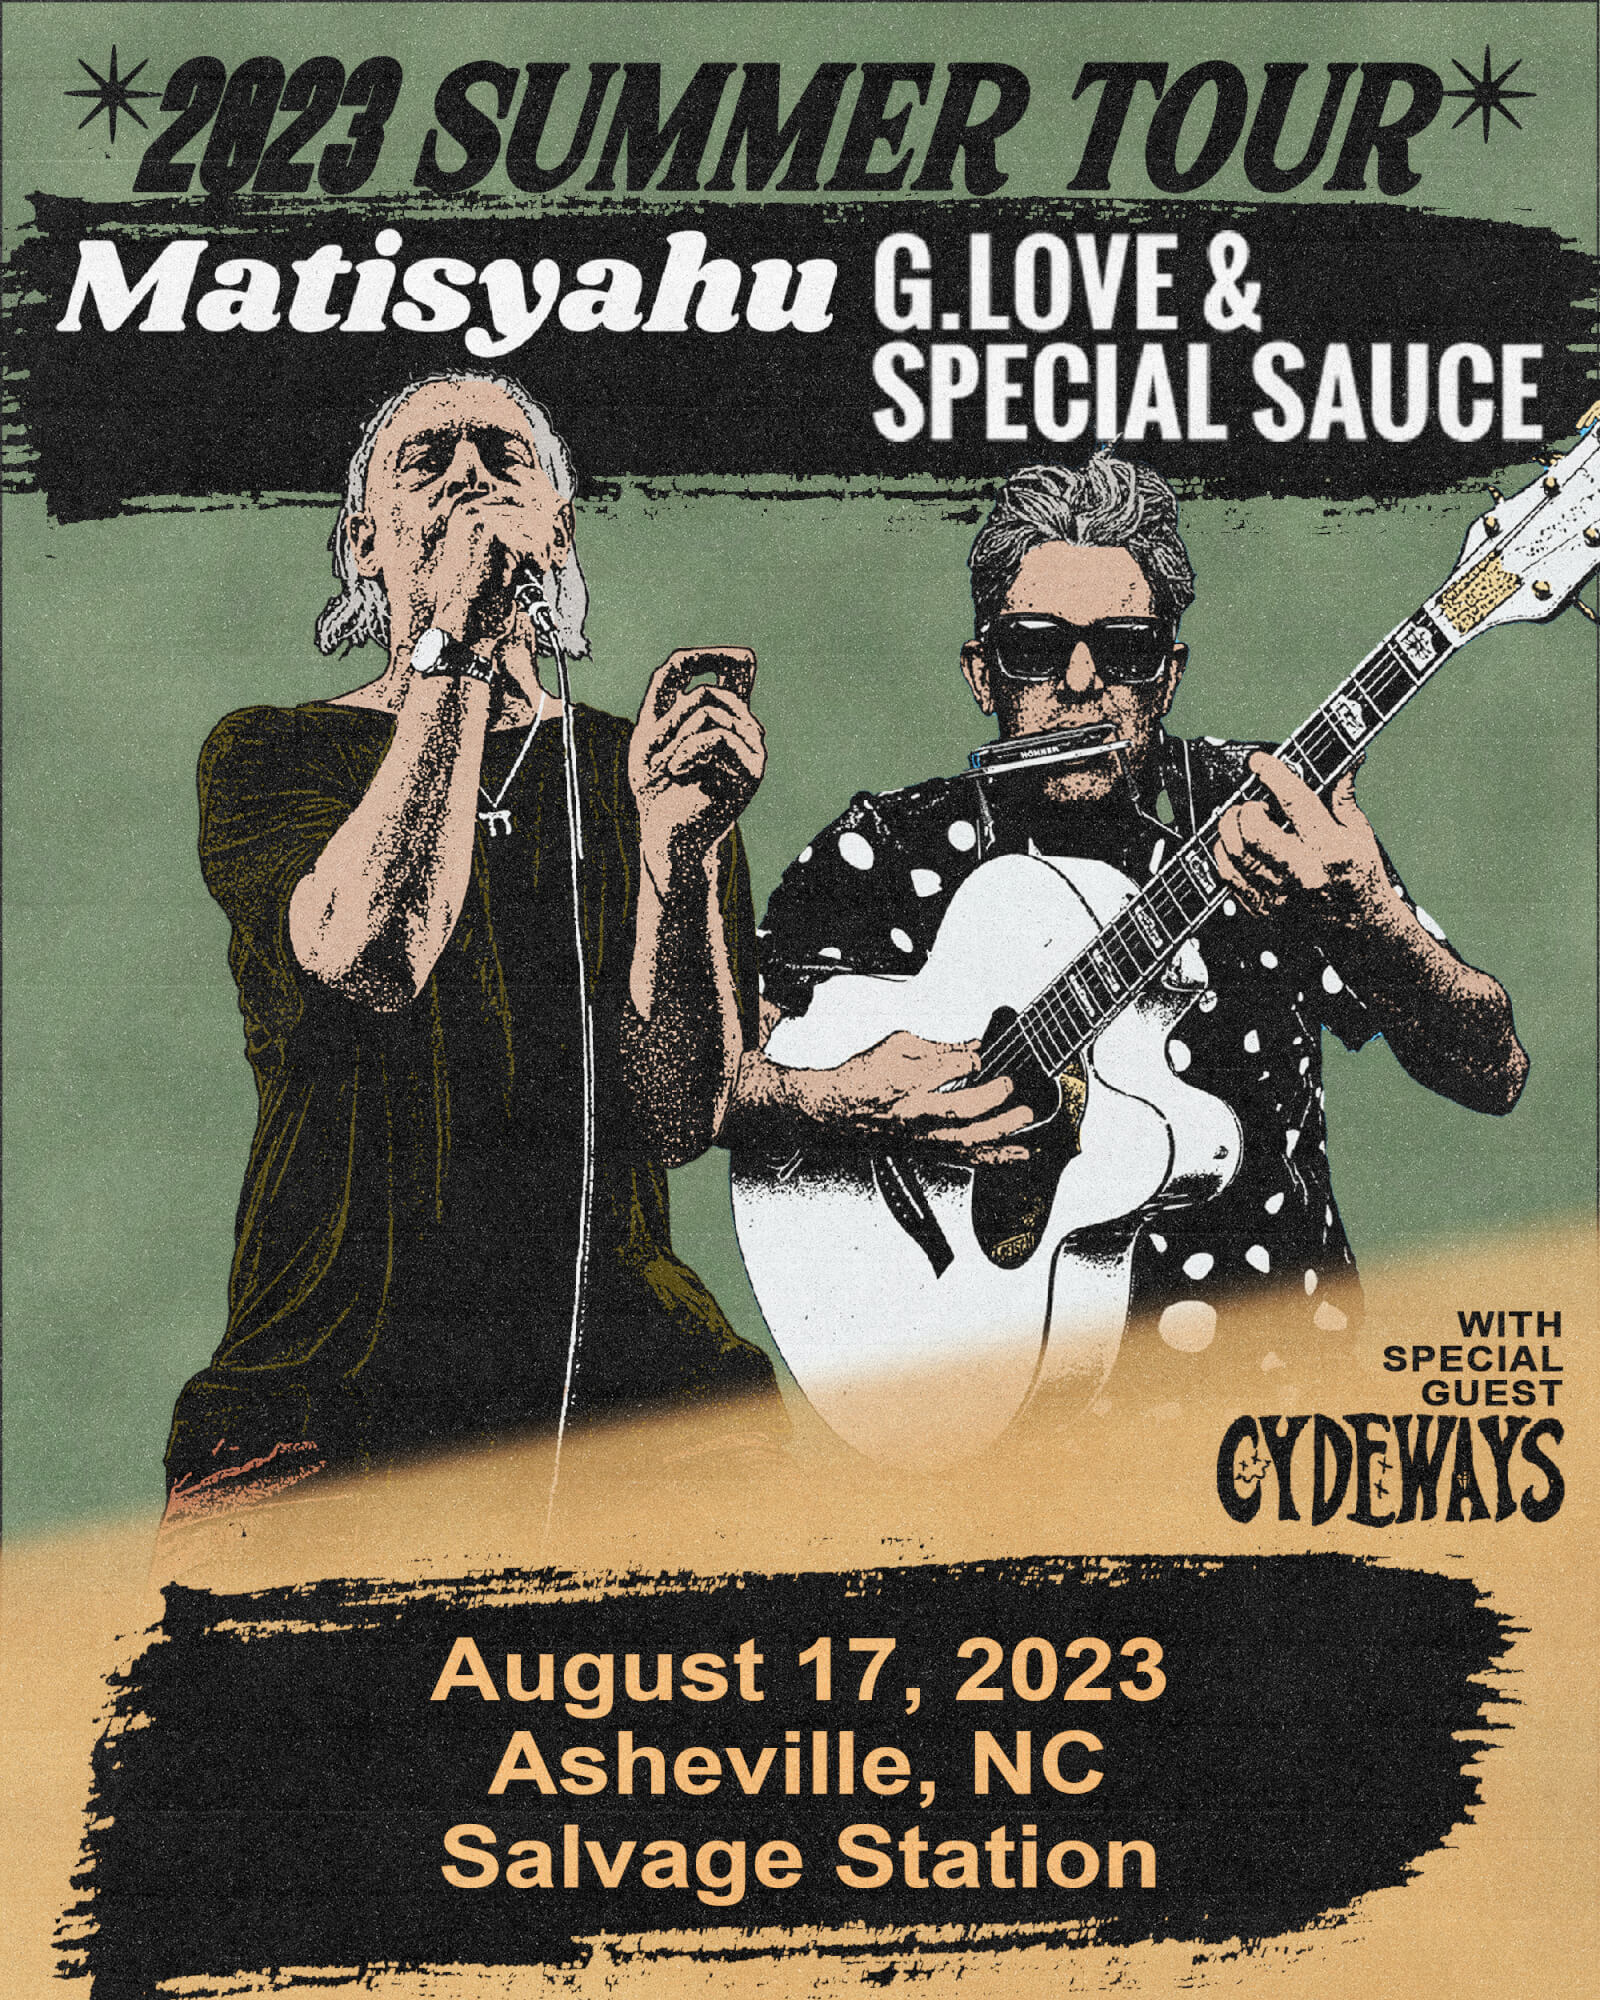 Matisyahu + G. Love & Special Sauce